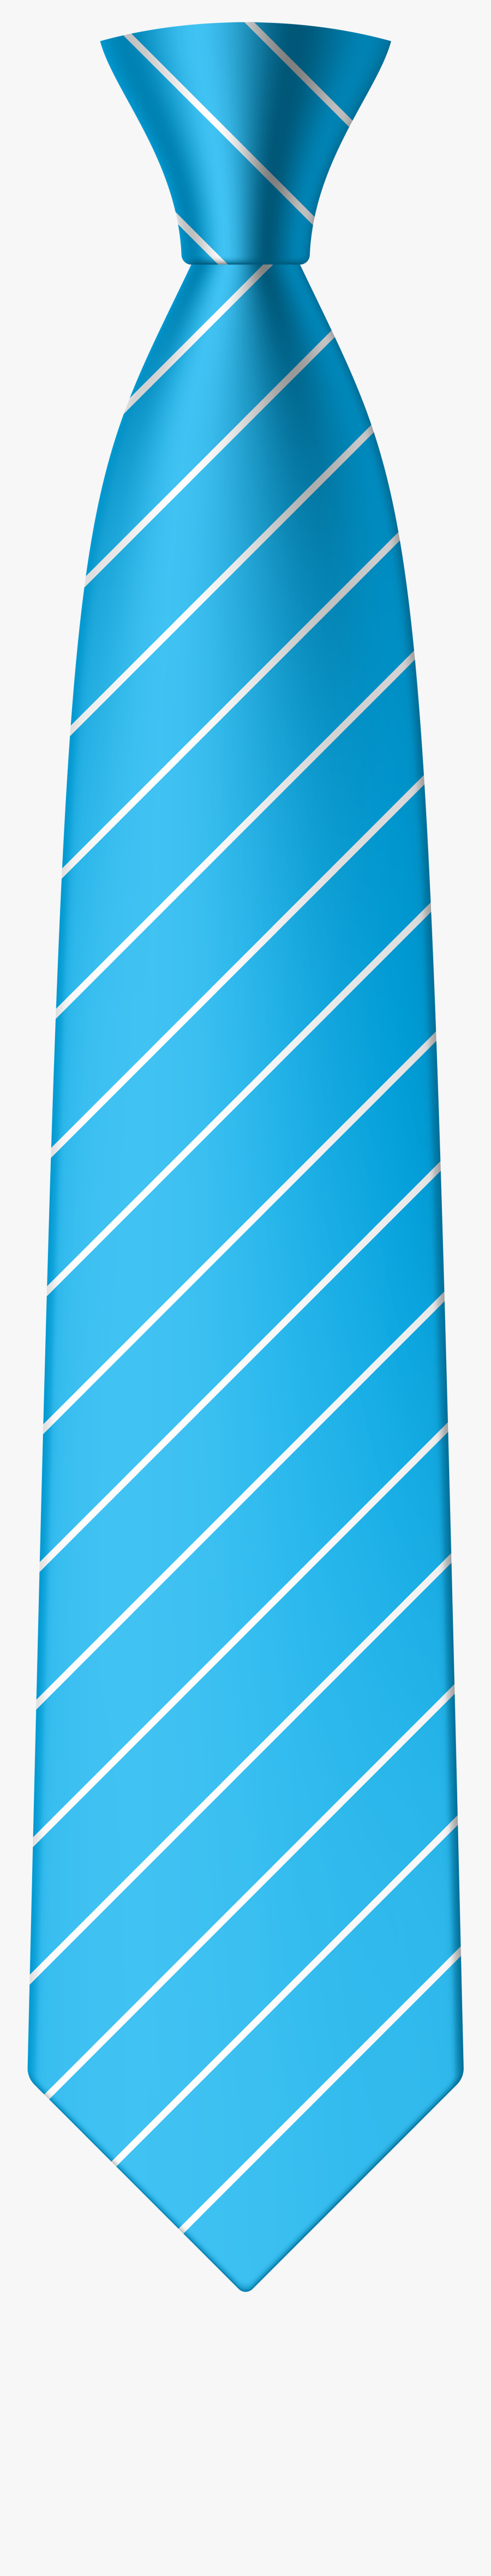 Blue Png Clip Art - Tie Png, Transparent Clipart